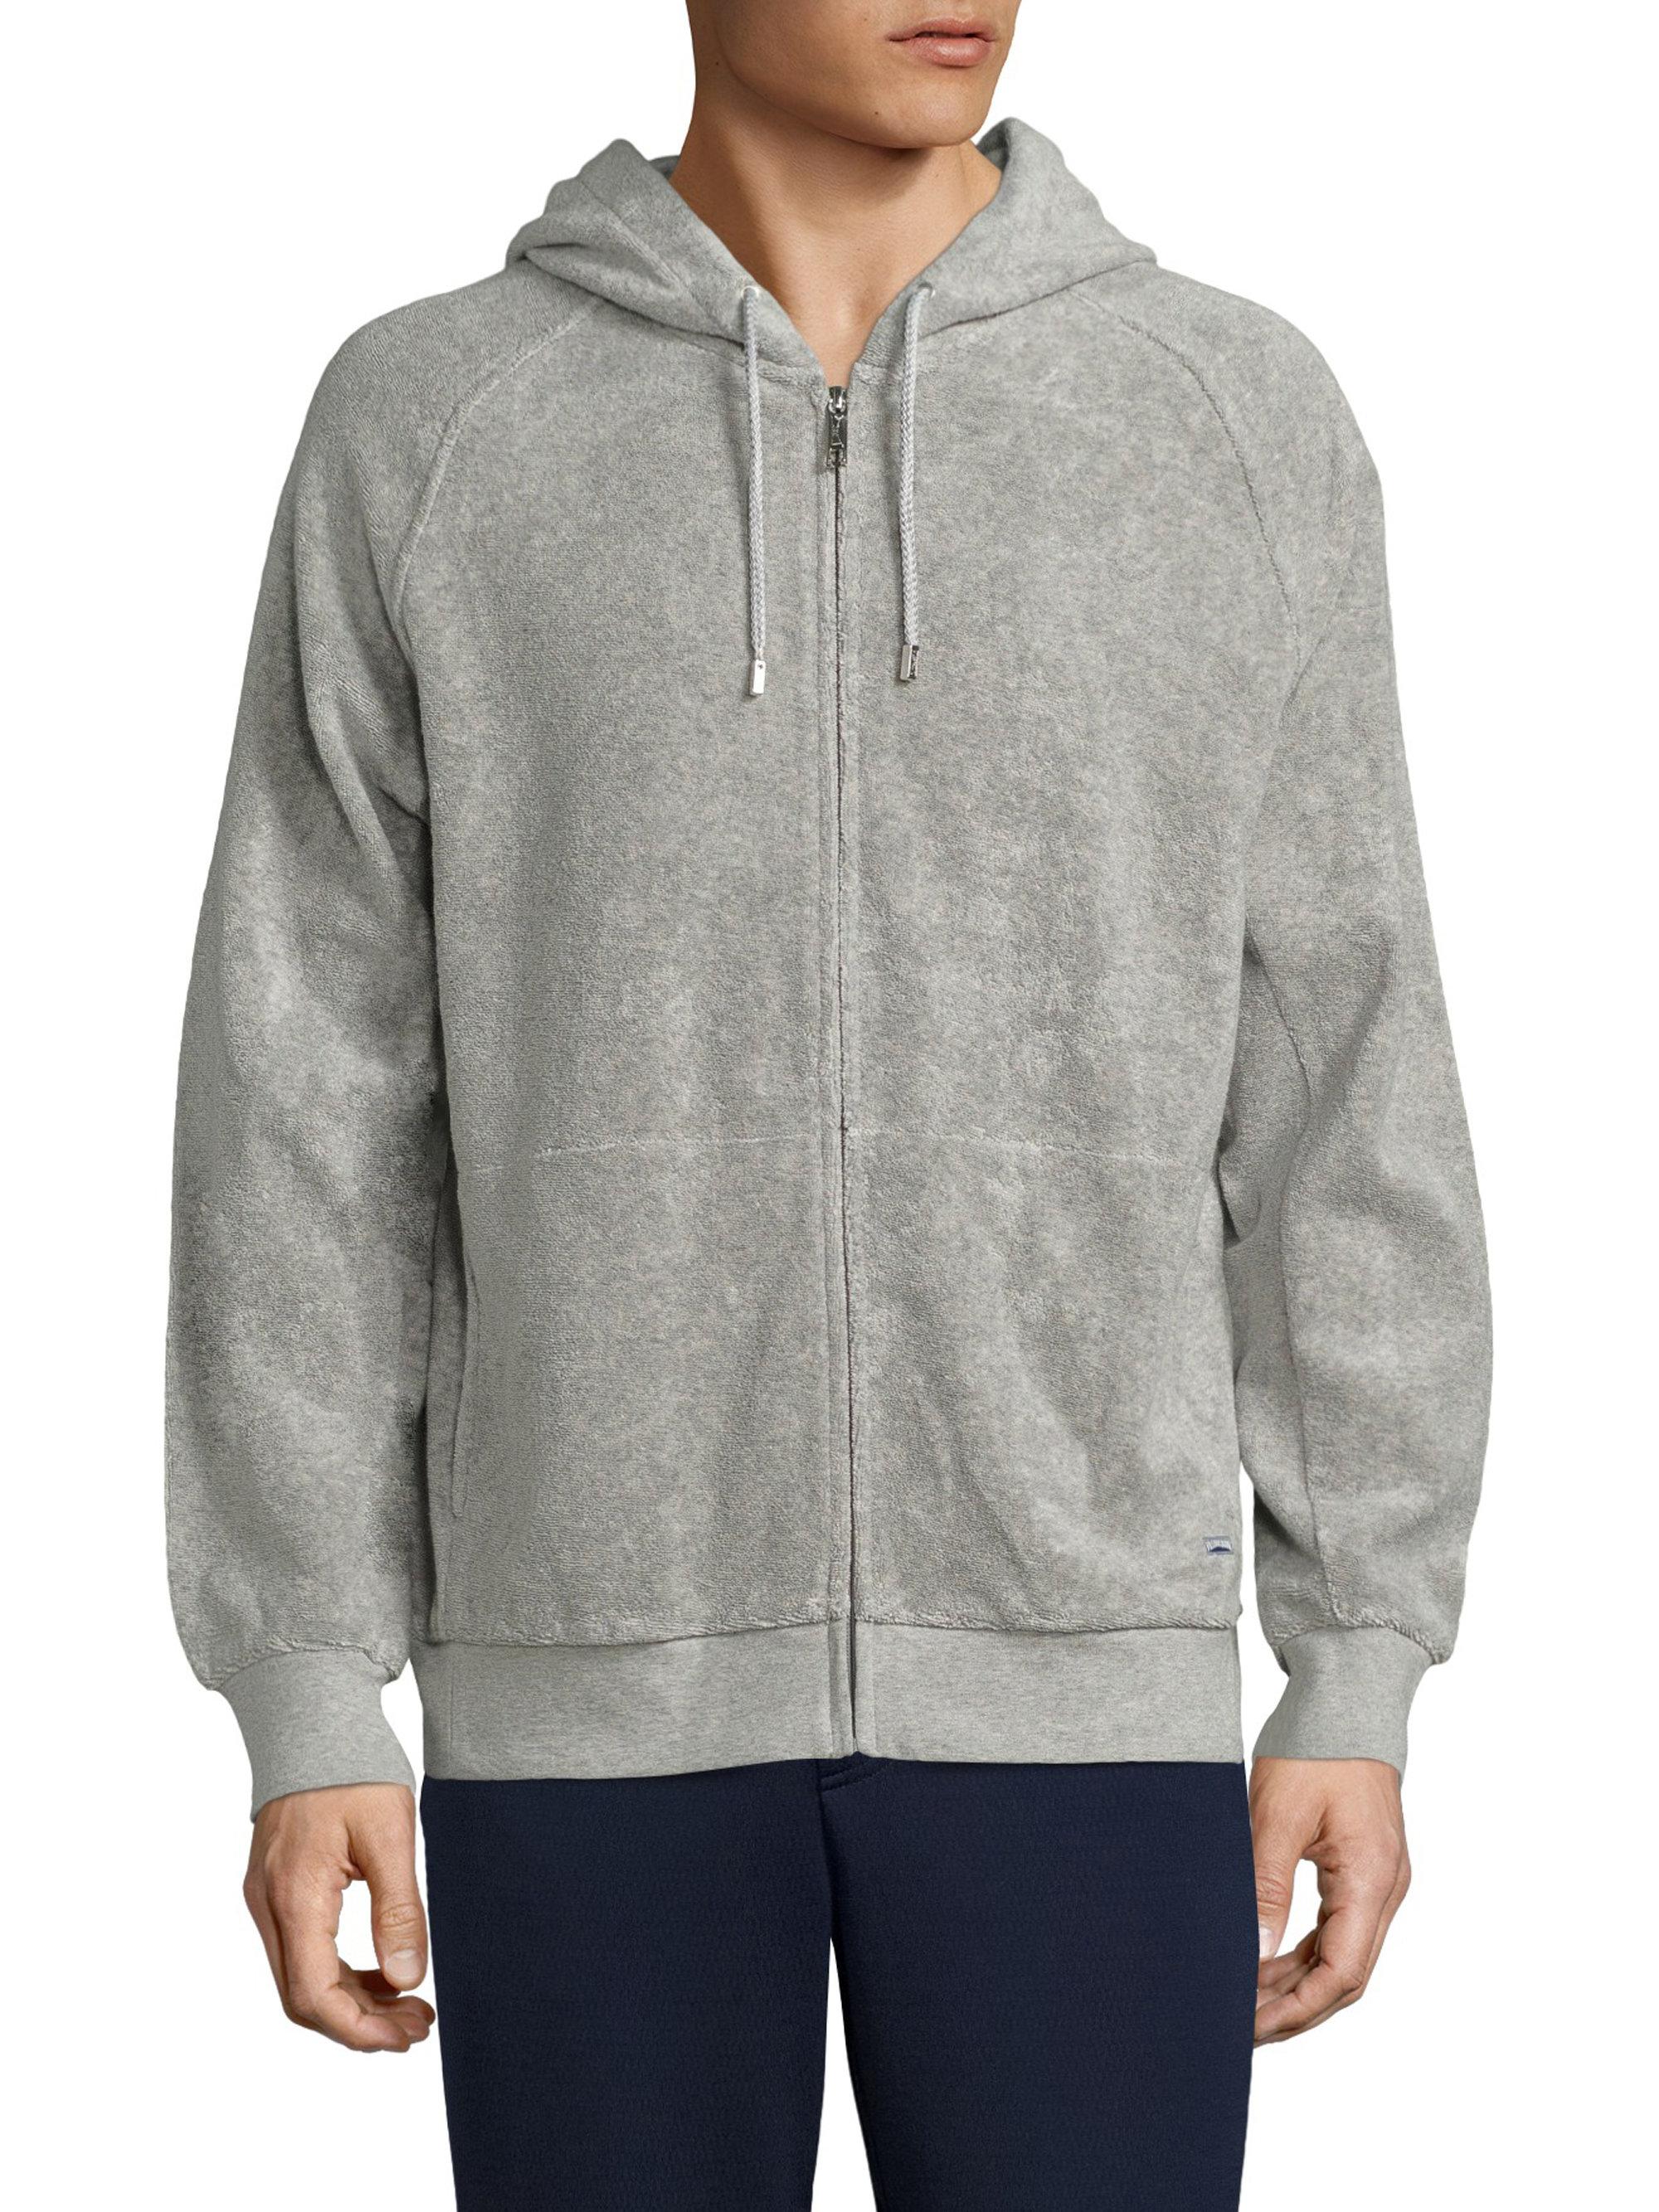 Vilebrequin Hayers Hooded Sweatshirt in Gray for Men - Lyst